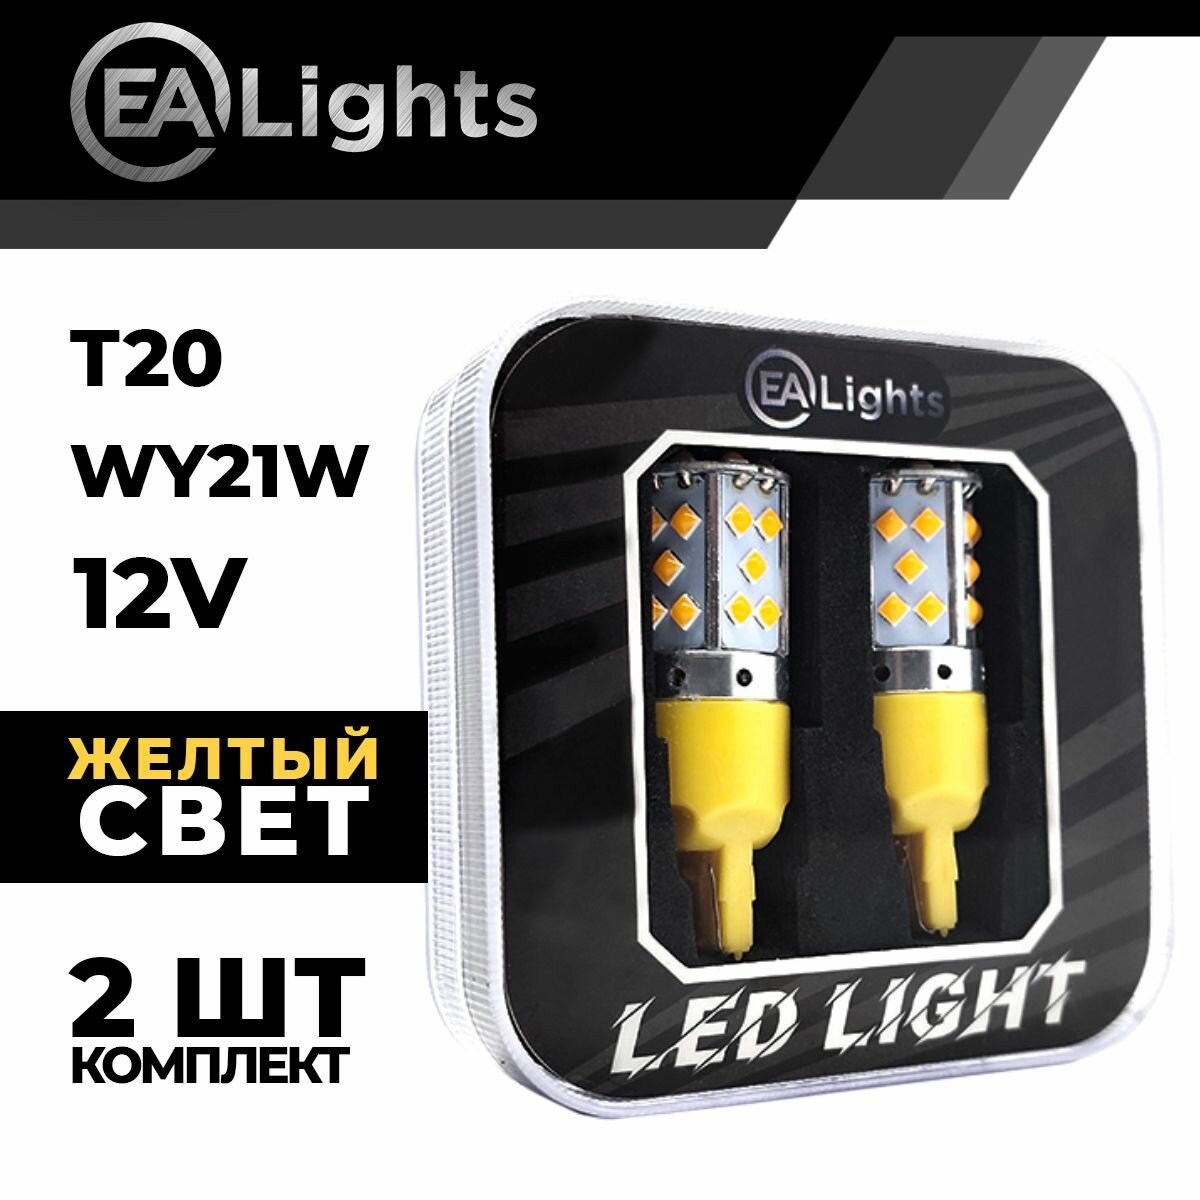 Автомобильная светодиодная LED лампа T20 WY21W (чип 3030-35) для указателей поворота 12в желтый свет 2 шт